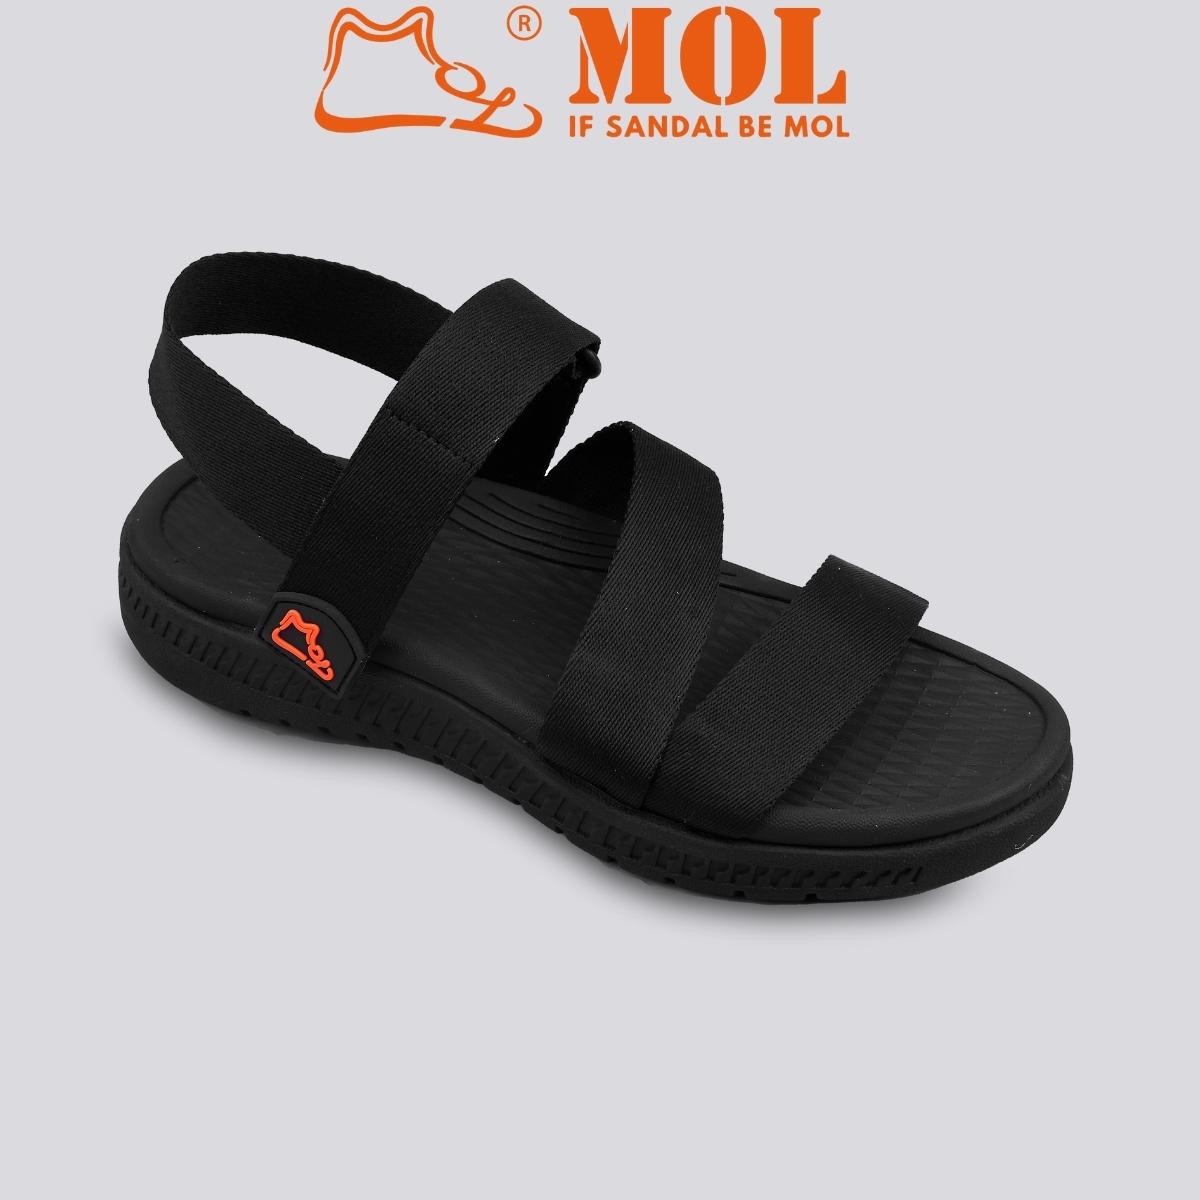 Giày sandal unisex nam nữ công nghệ siêu nhẹ hiệu MOL MS2